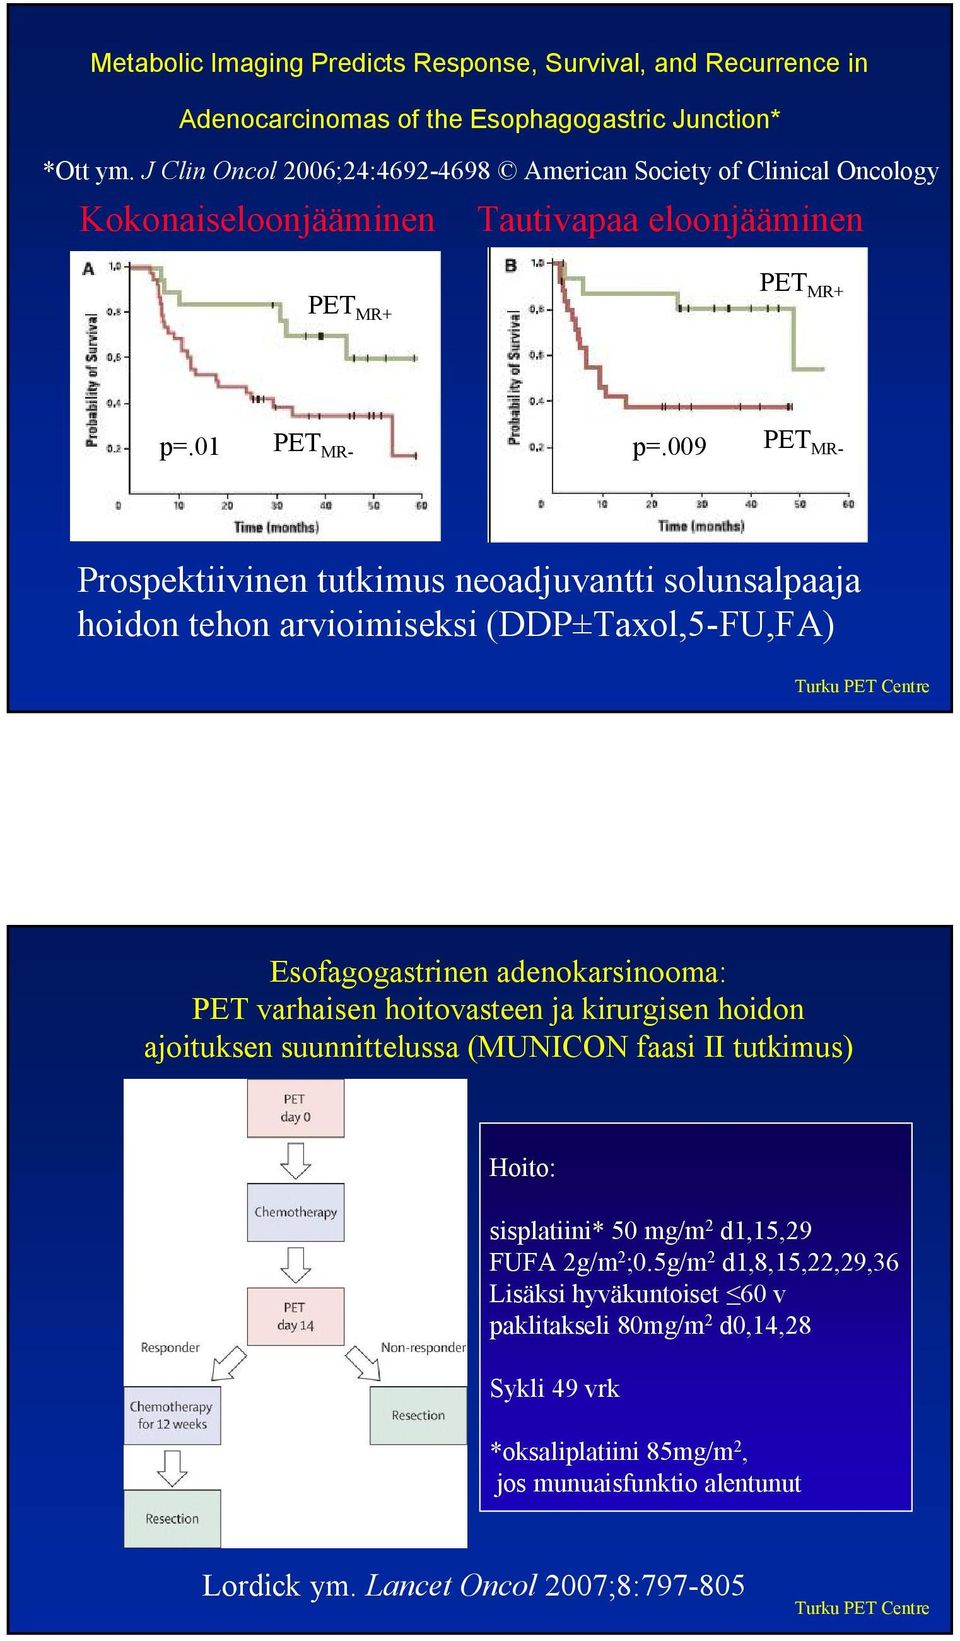 009 PET MR- Prospektiivinen tutkimus neoadjuvantti solunsalpaaja hoidon tehon arvioimiseksi (DDP±Taxol,5-FU,FA) Esofagogastrinen adenokarsinooma: PET varhaisen hoitovasteen ja kirurgisen